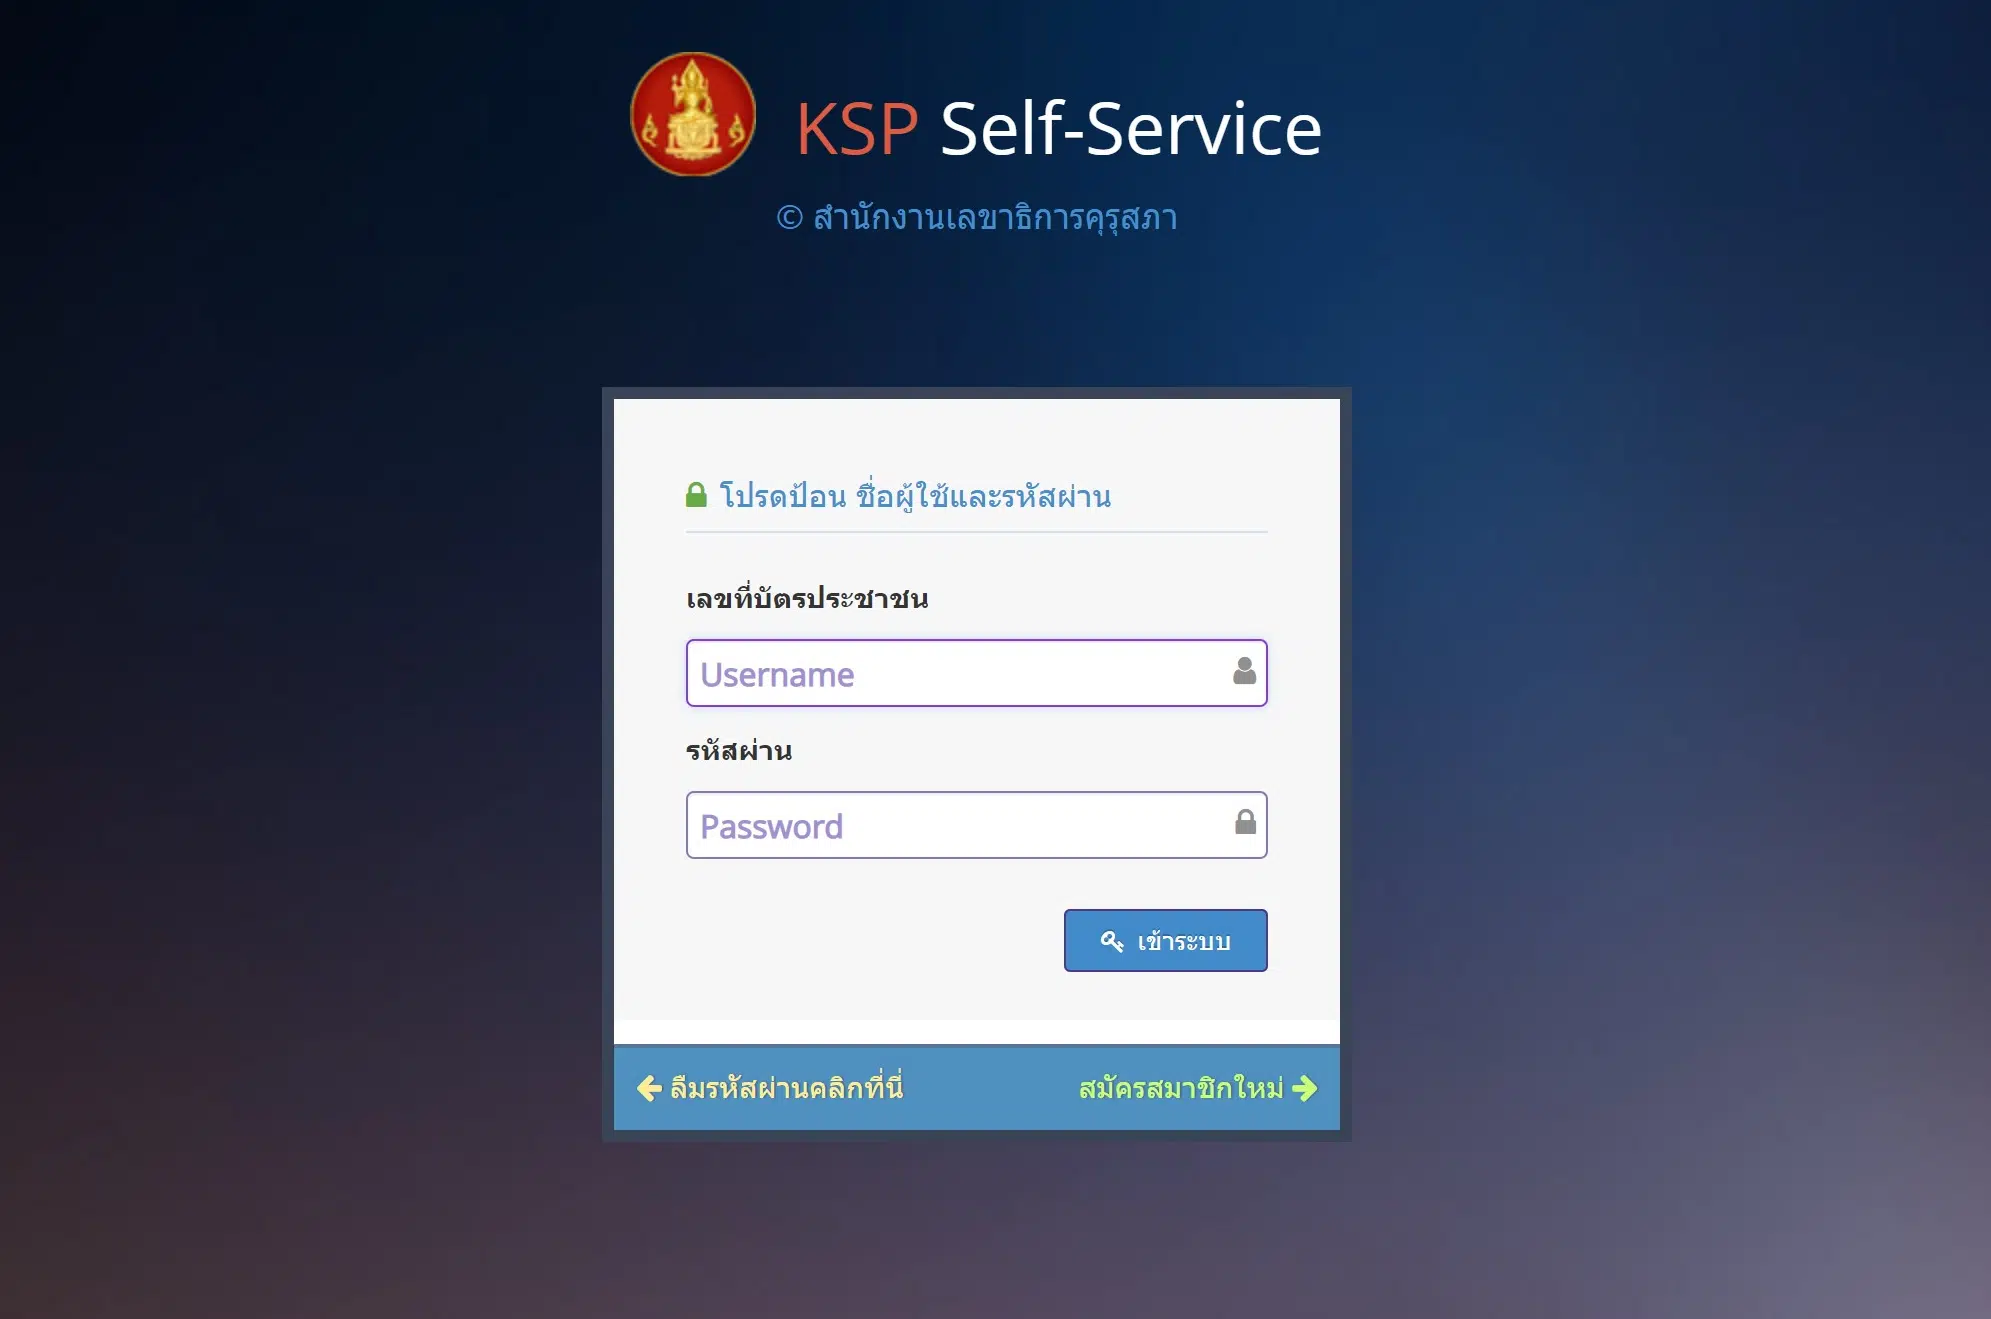 KSP Self-Service ขั้นตอนการพิมพ์สำเนาใบอนุญาตประกอบวิชาชีพฯ อิเล็กทรอนิกส์